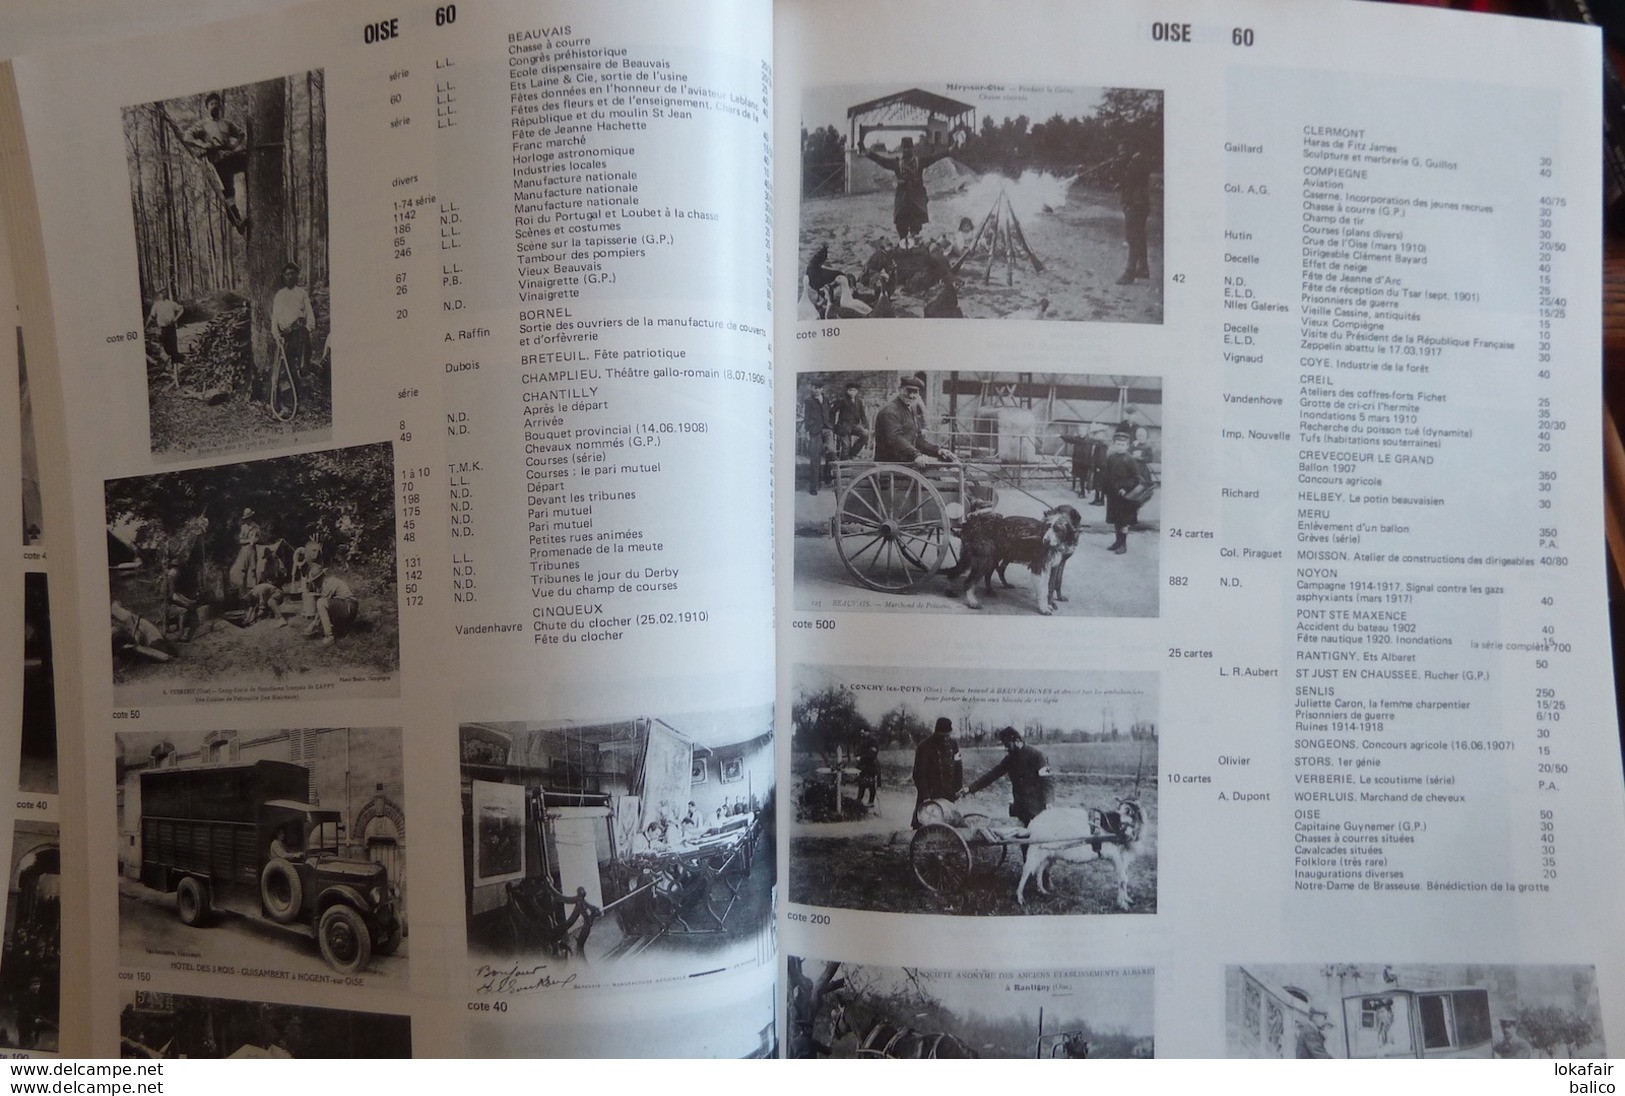 ARGUS  BAUDET - 1978 / 1979 Encyclopédie Internationale de la Cartes Postales Anciennes  (Avec quelques pages sur 352)